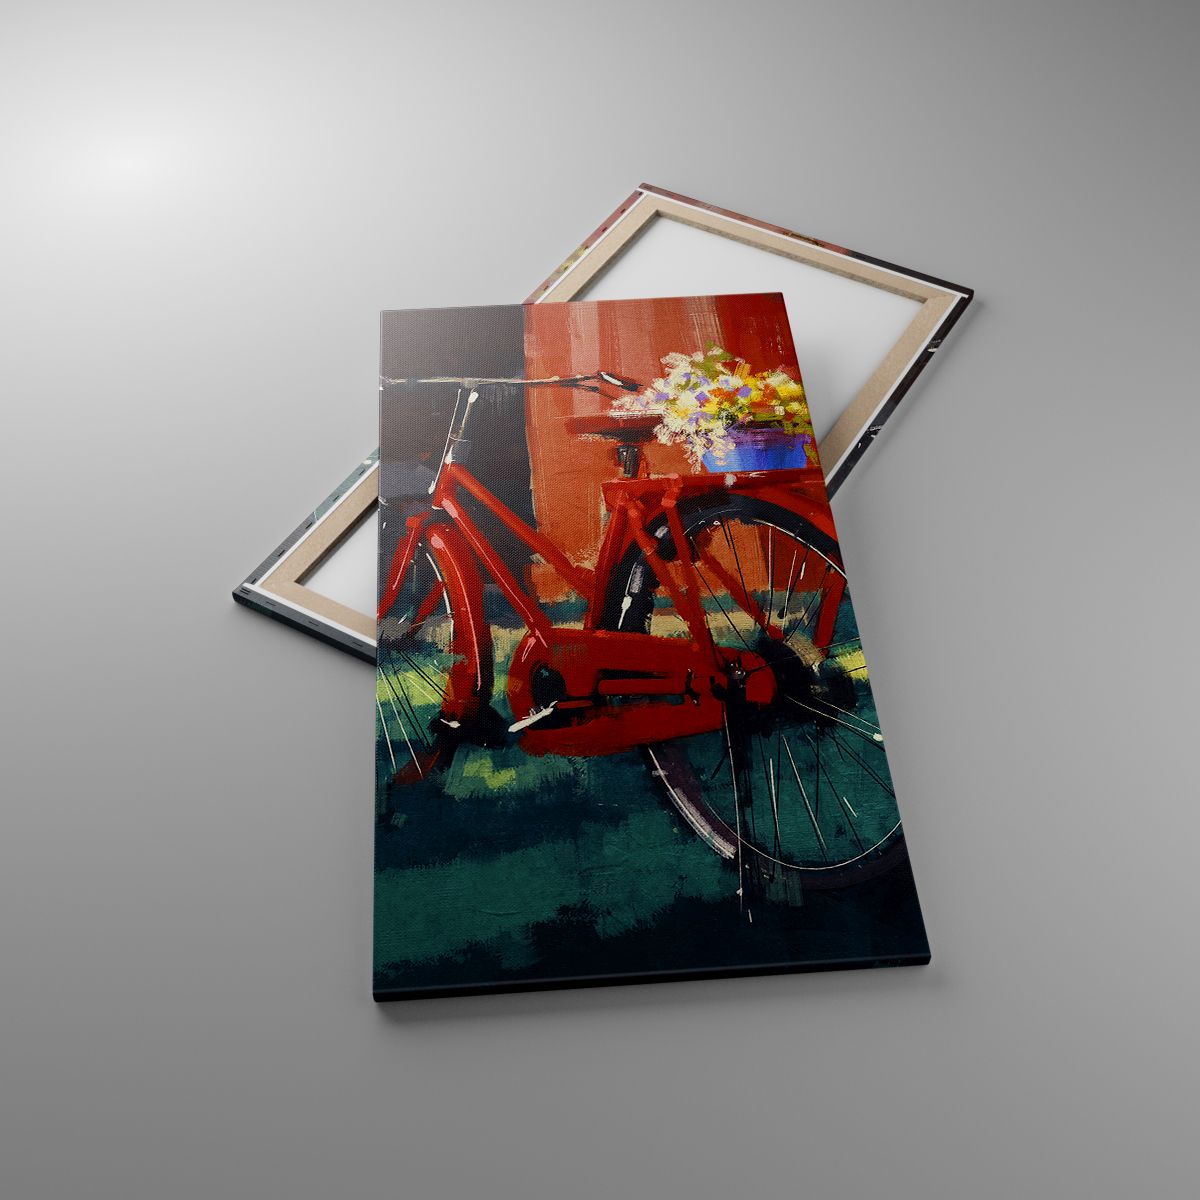 Obrazy Rower Vintage, Obrazy Kwiaty W Doniczce, Obrazy Podróż, Obrazy Sztuka, Obrazy Malarstwo